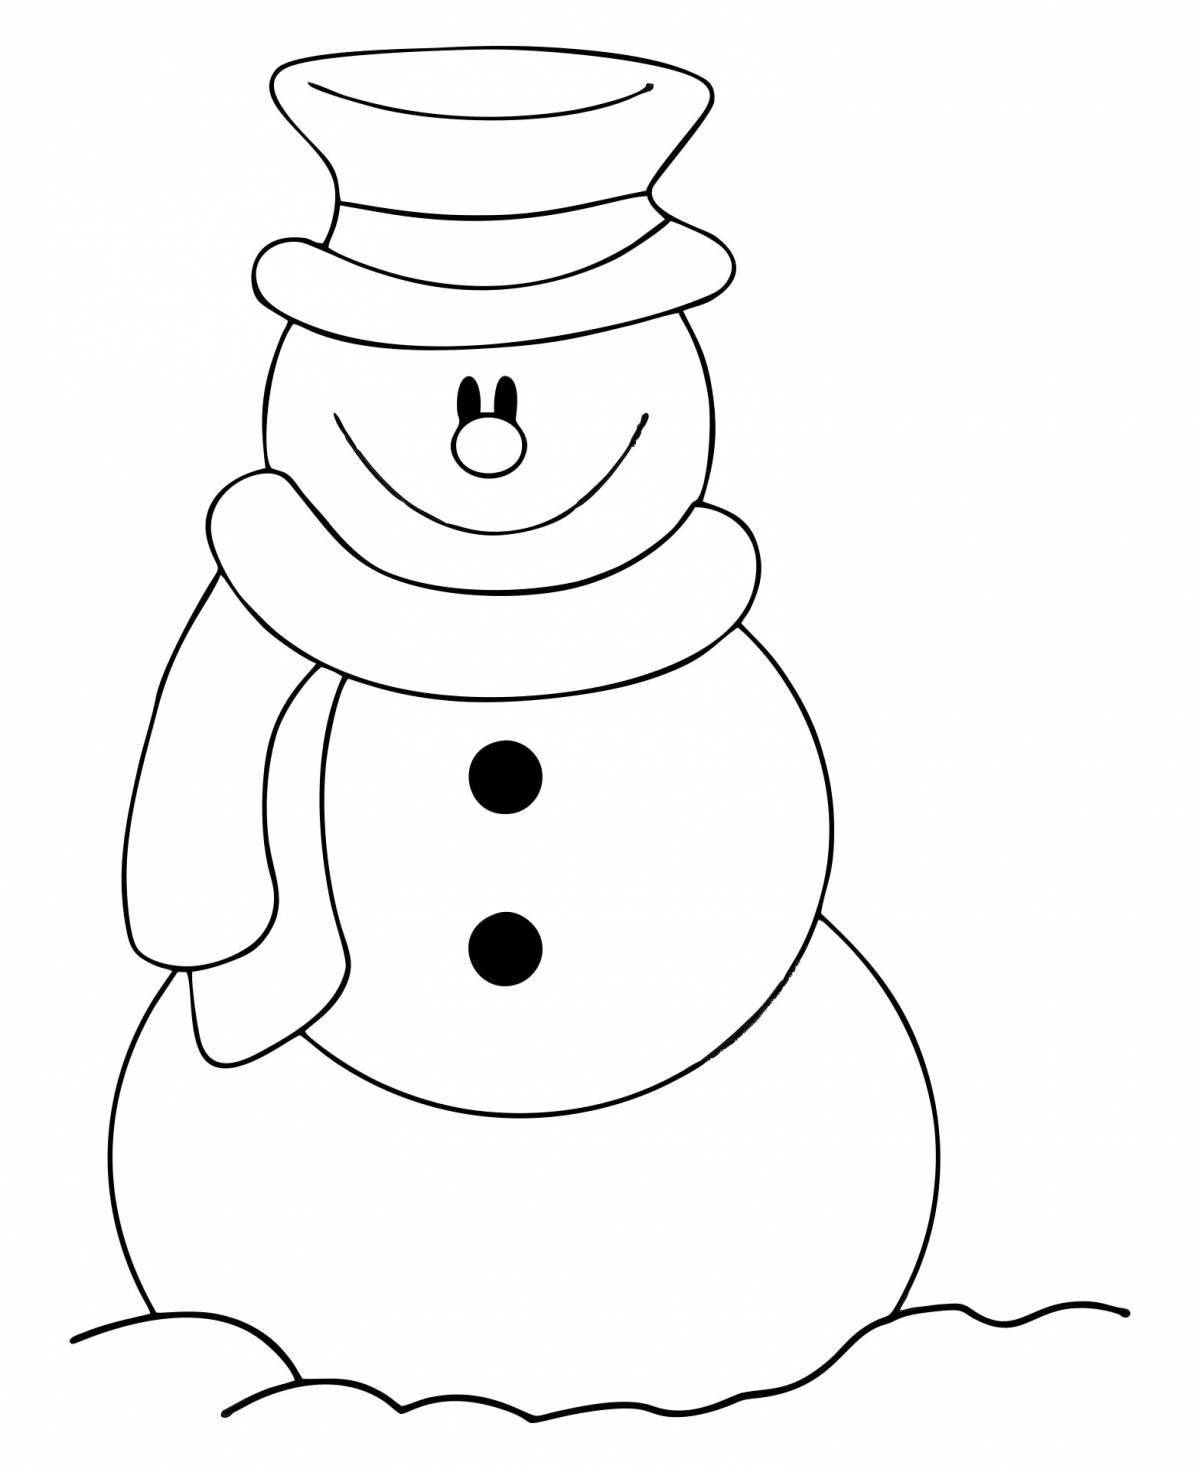 Увлекательная раскраска снеговик без носа